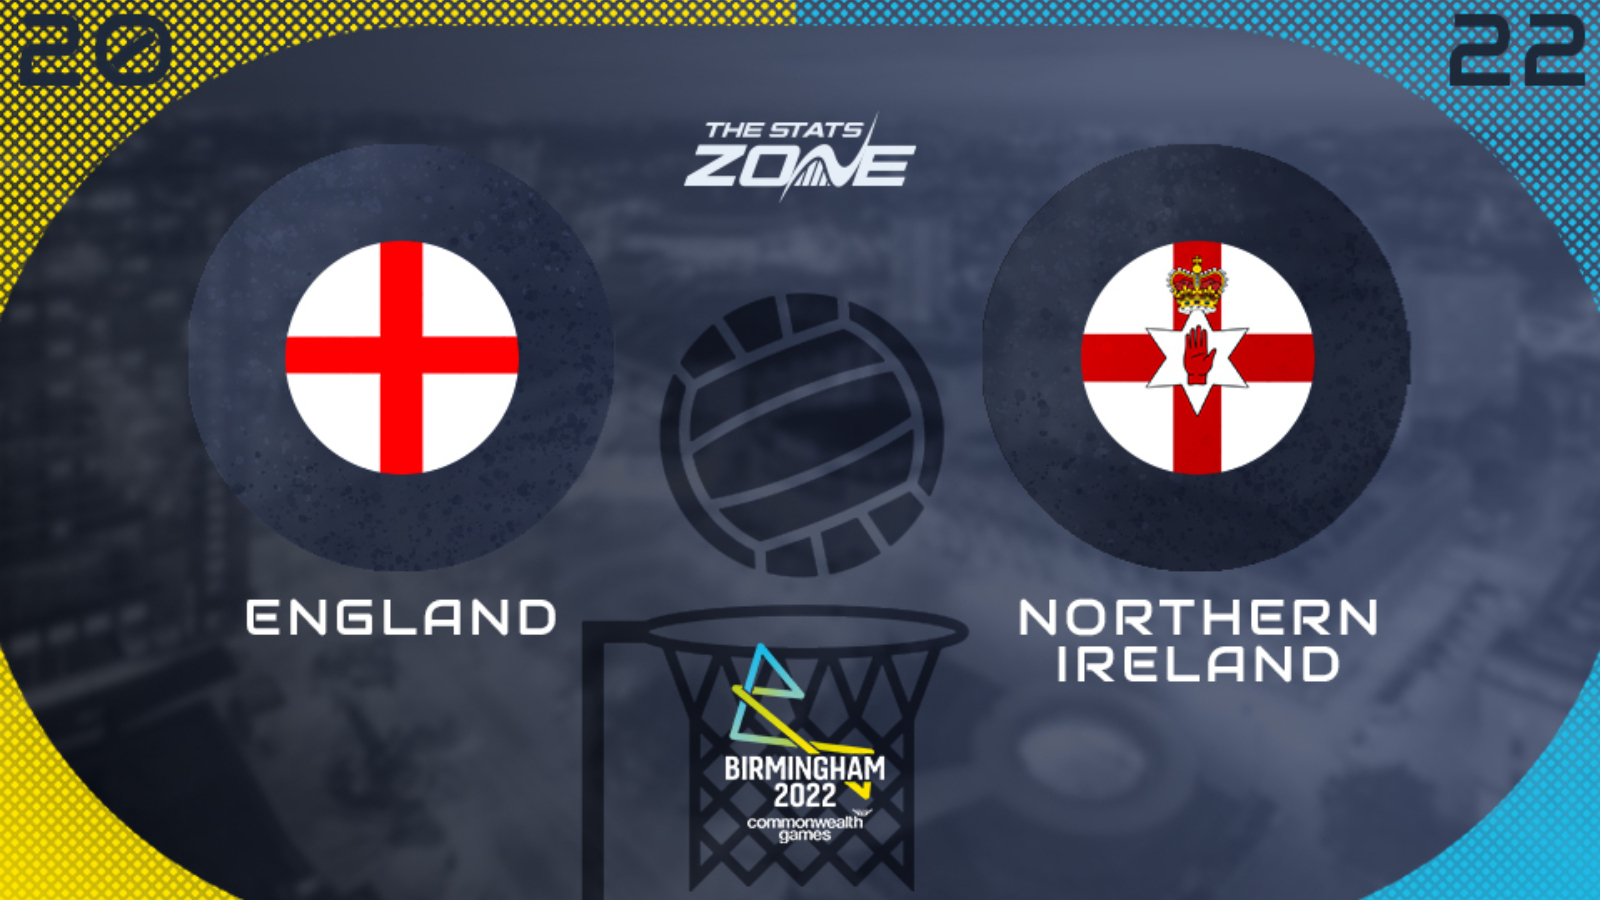 CWG Netball England Vs Northern Ireland 